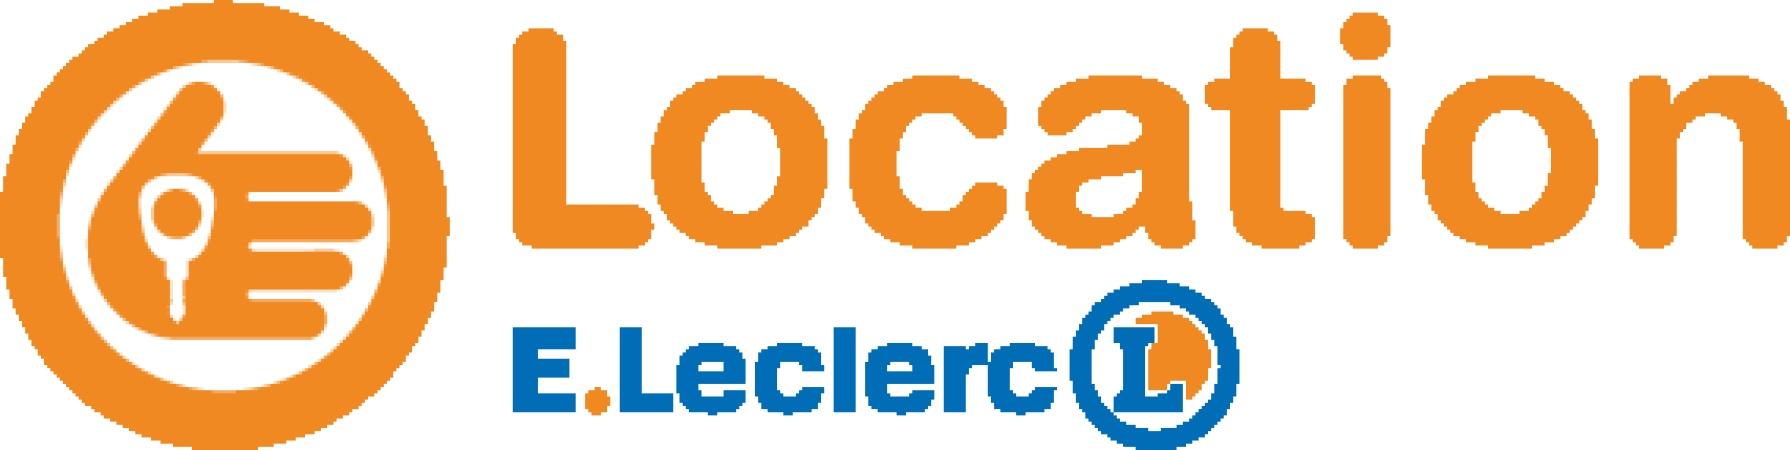 E.leclerc Location Achères